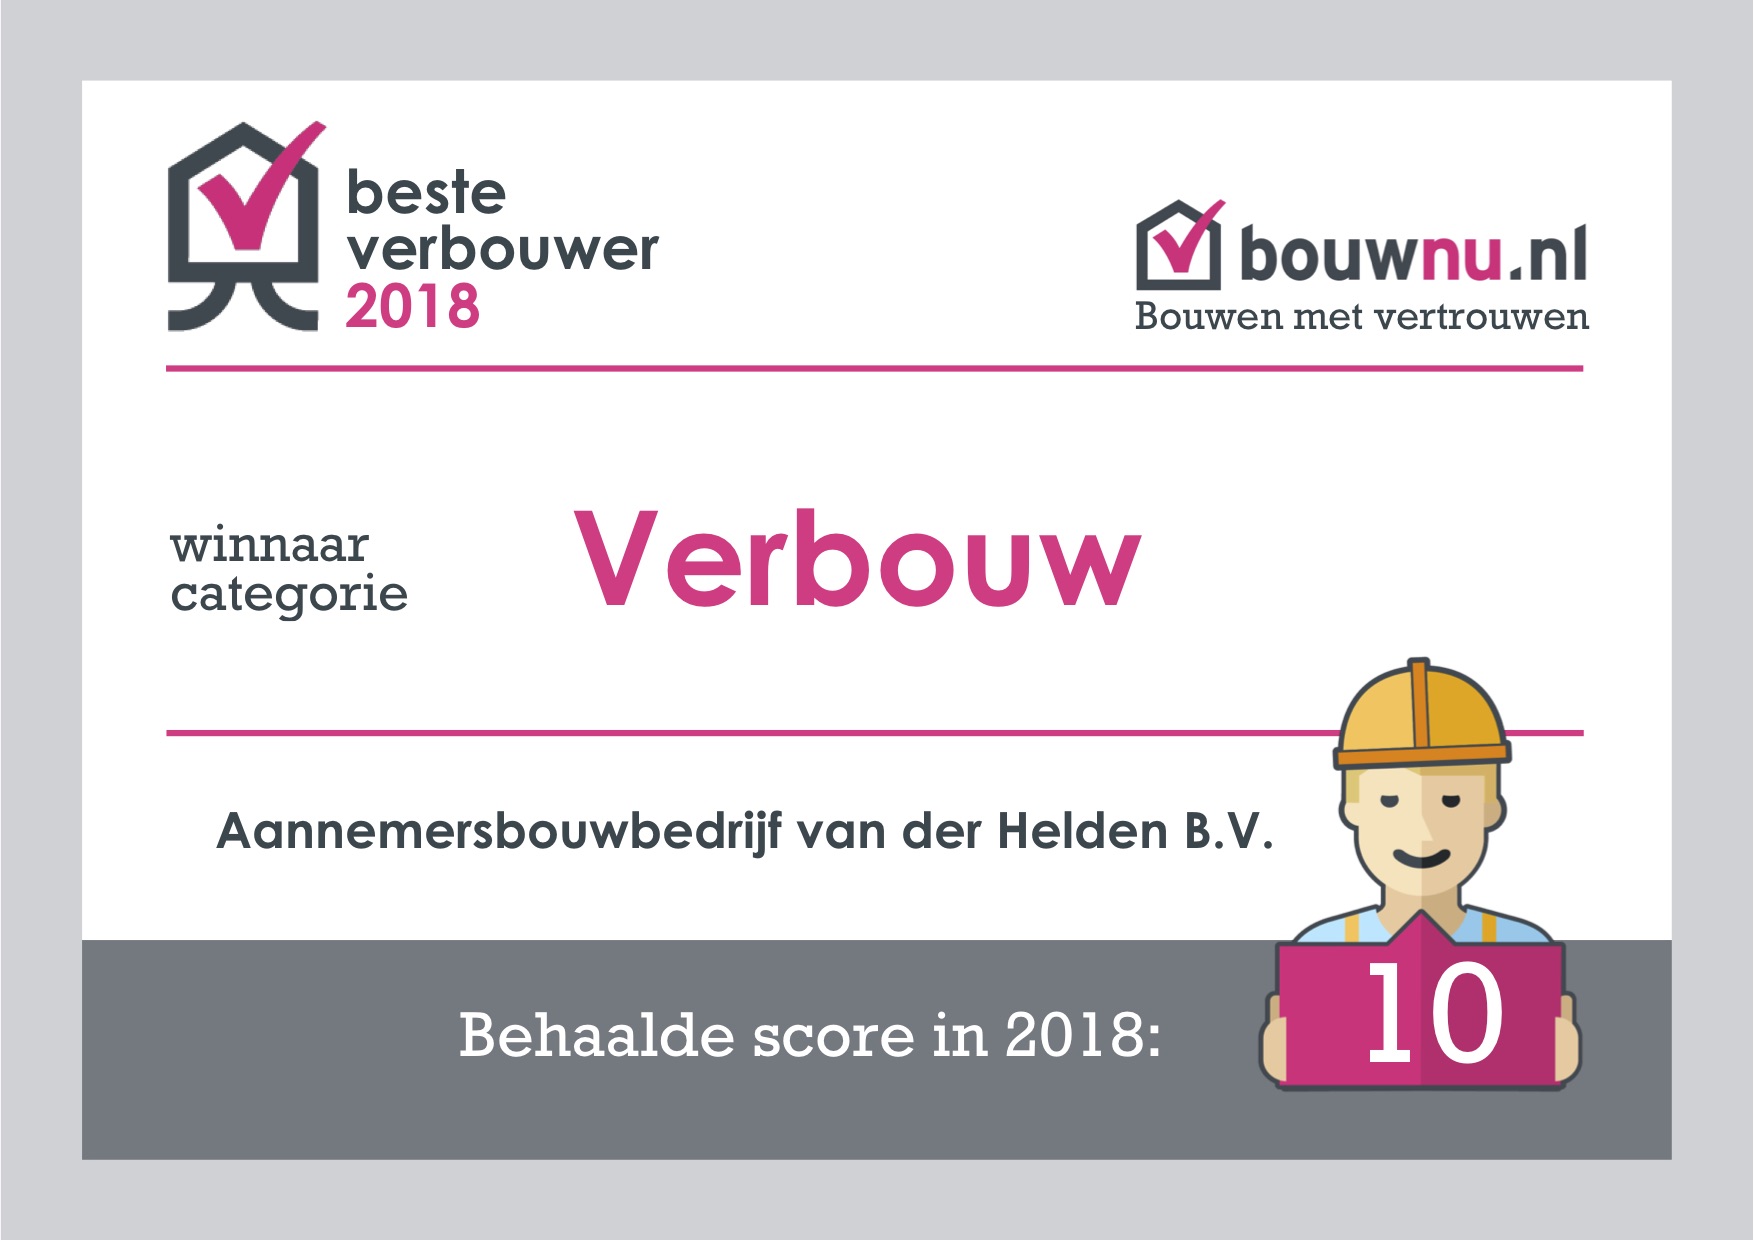 Aannemersbouwbedrijf van der Helden is Beste Verbouwer 2018